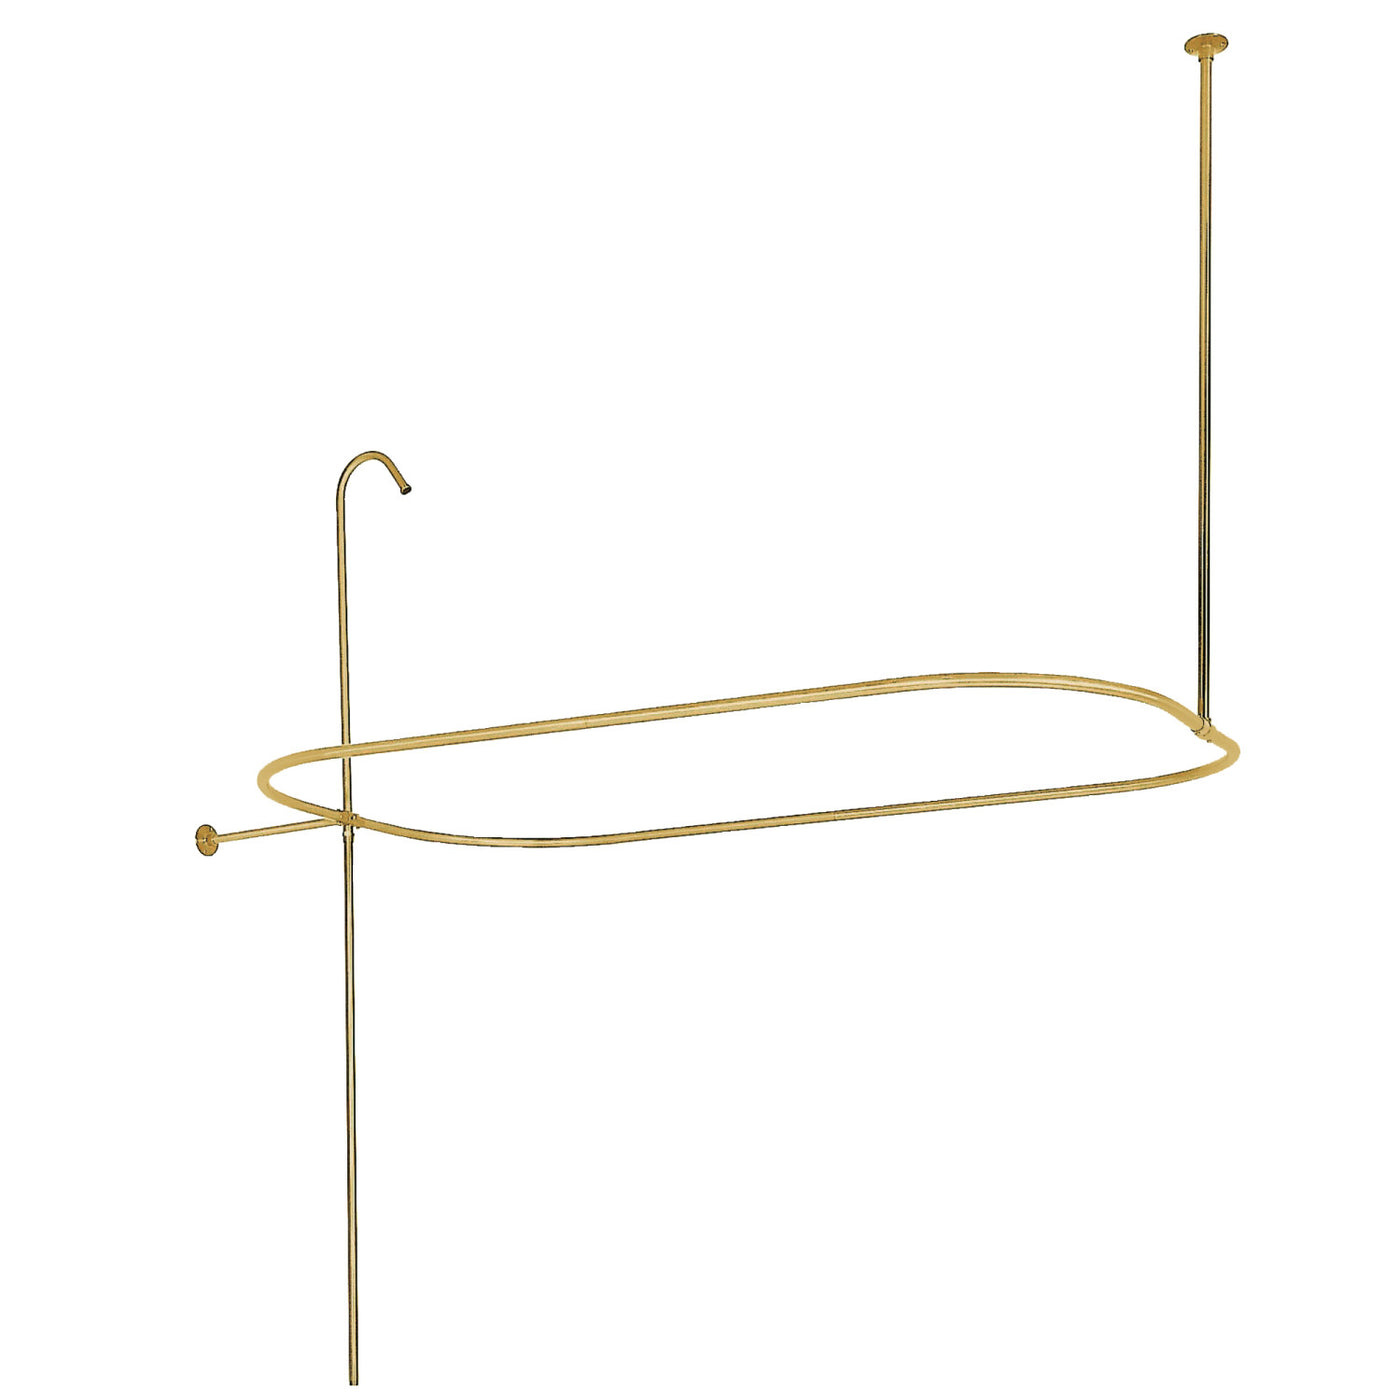 Elements of Design ED1040-2 End Mount Rectangular Shower Riser with Enclosure, Polished Brass